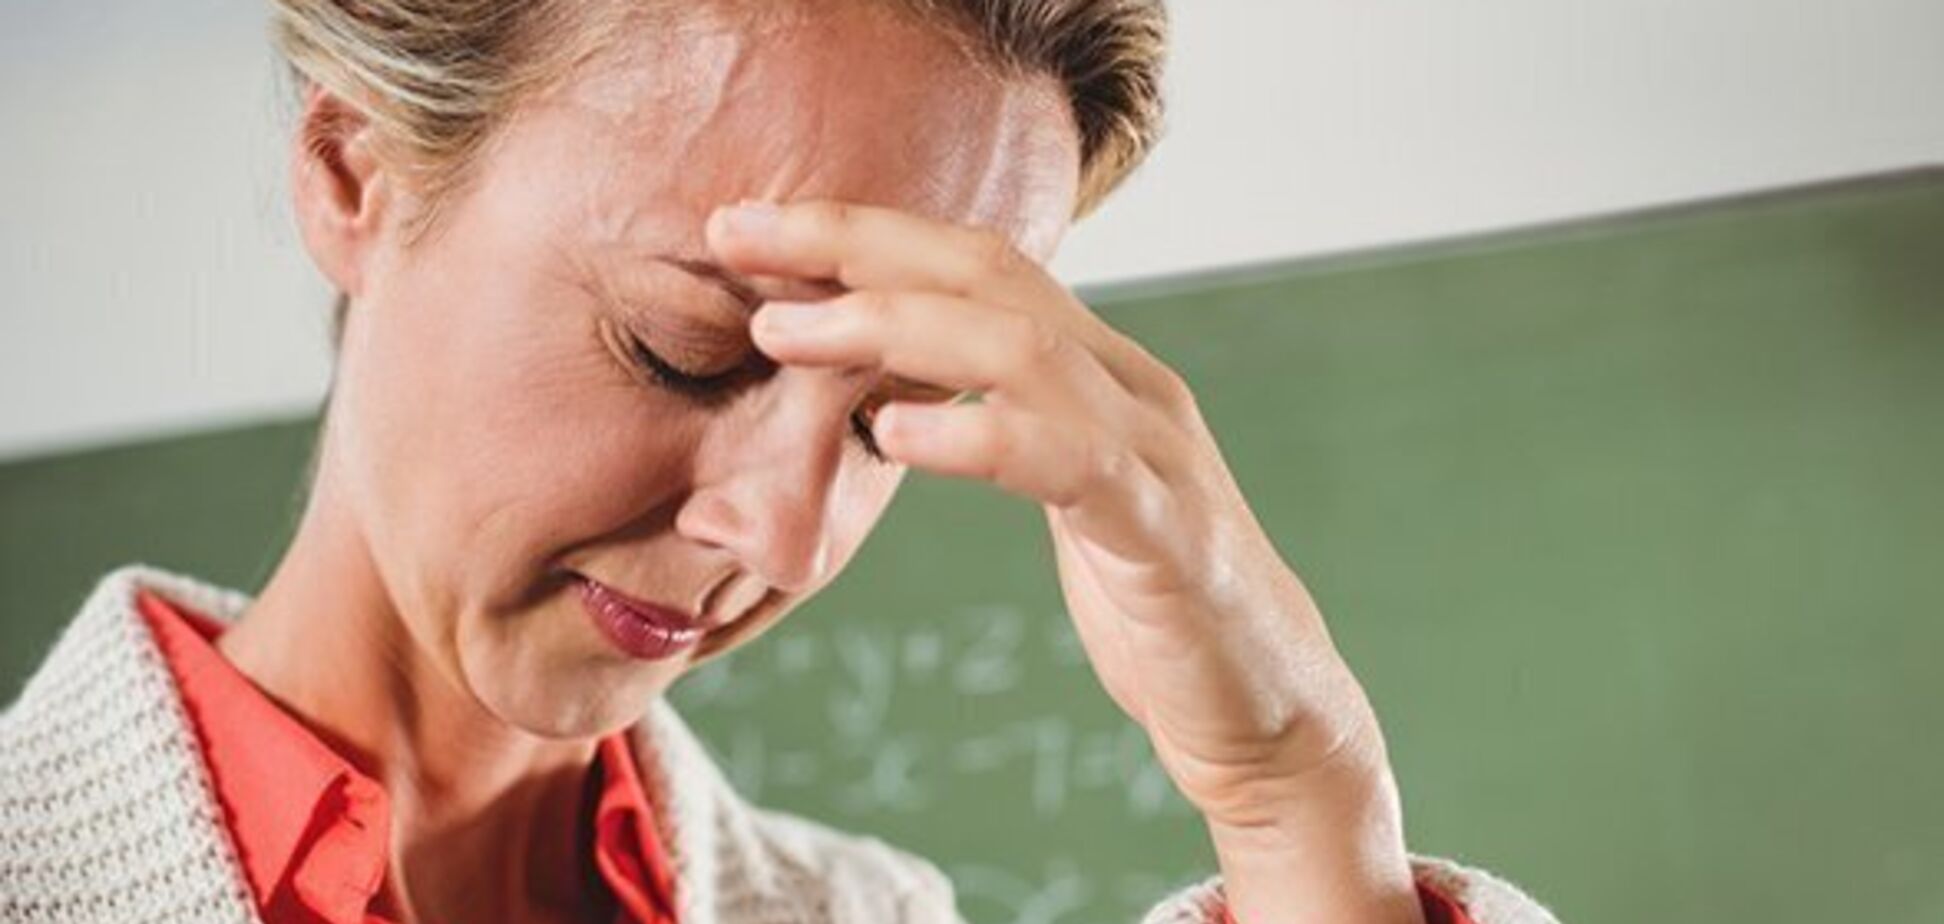 Учителя должны посещать психолога ежемесячно: експерт назвала причины